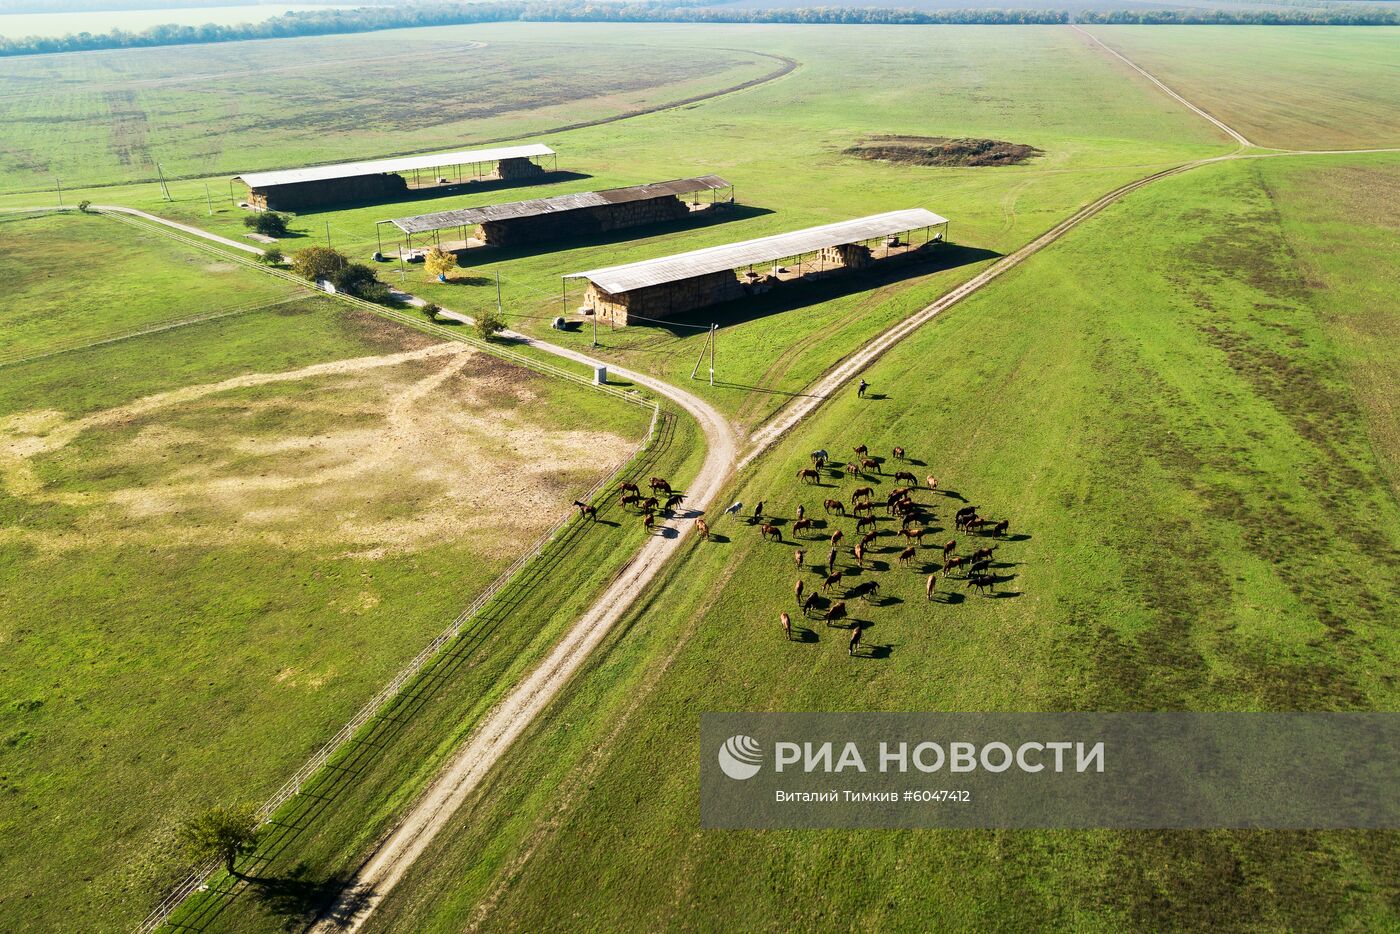 Конный завод "Восход" в Краснодарском крае